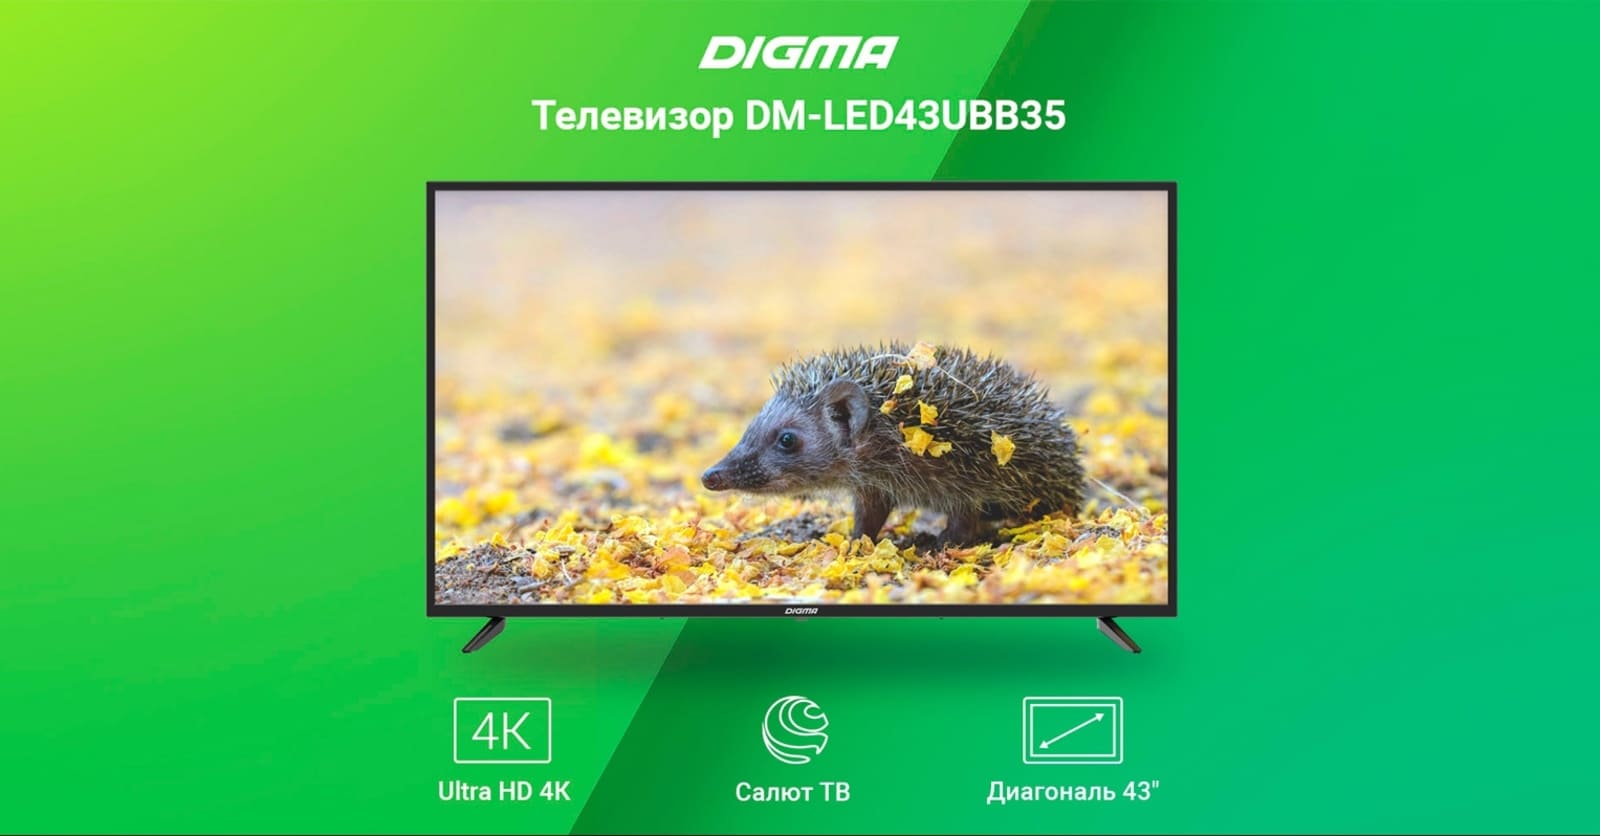 Телевизор Digma DM-LED43UBB35